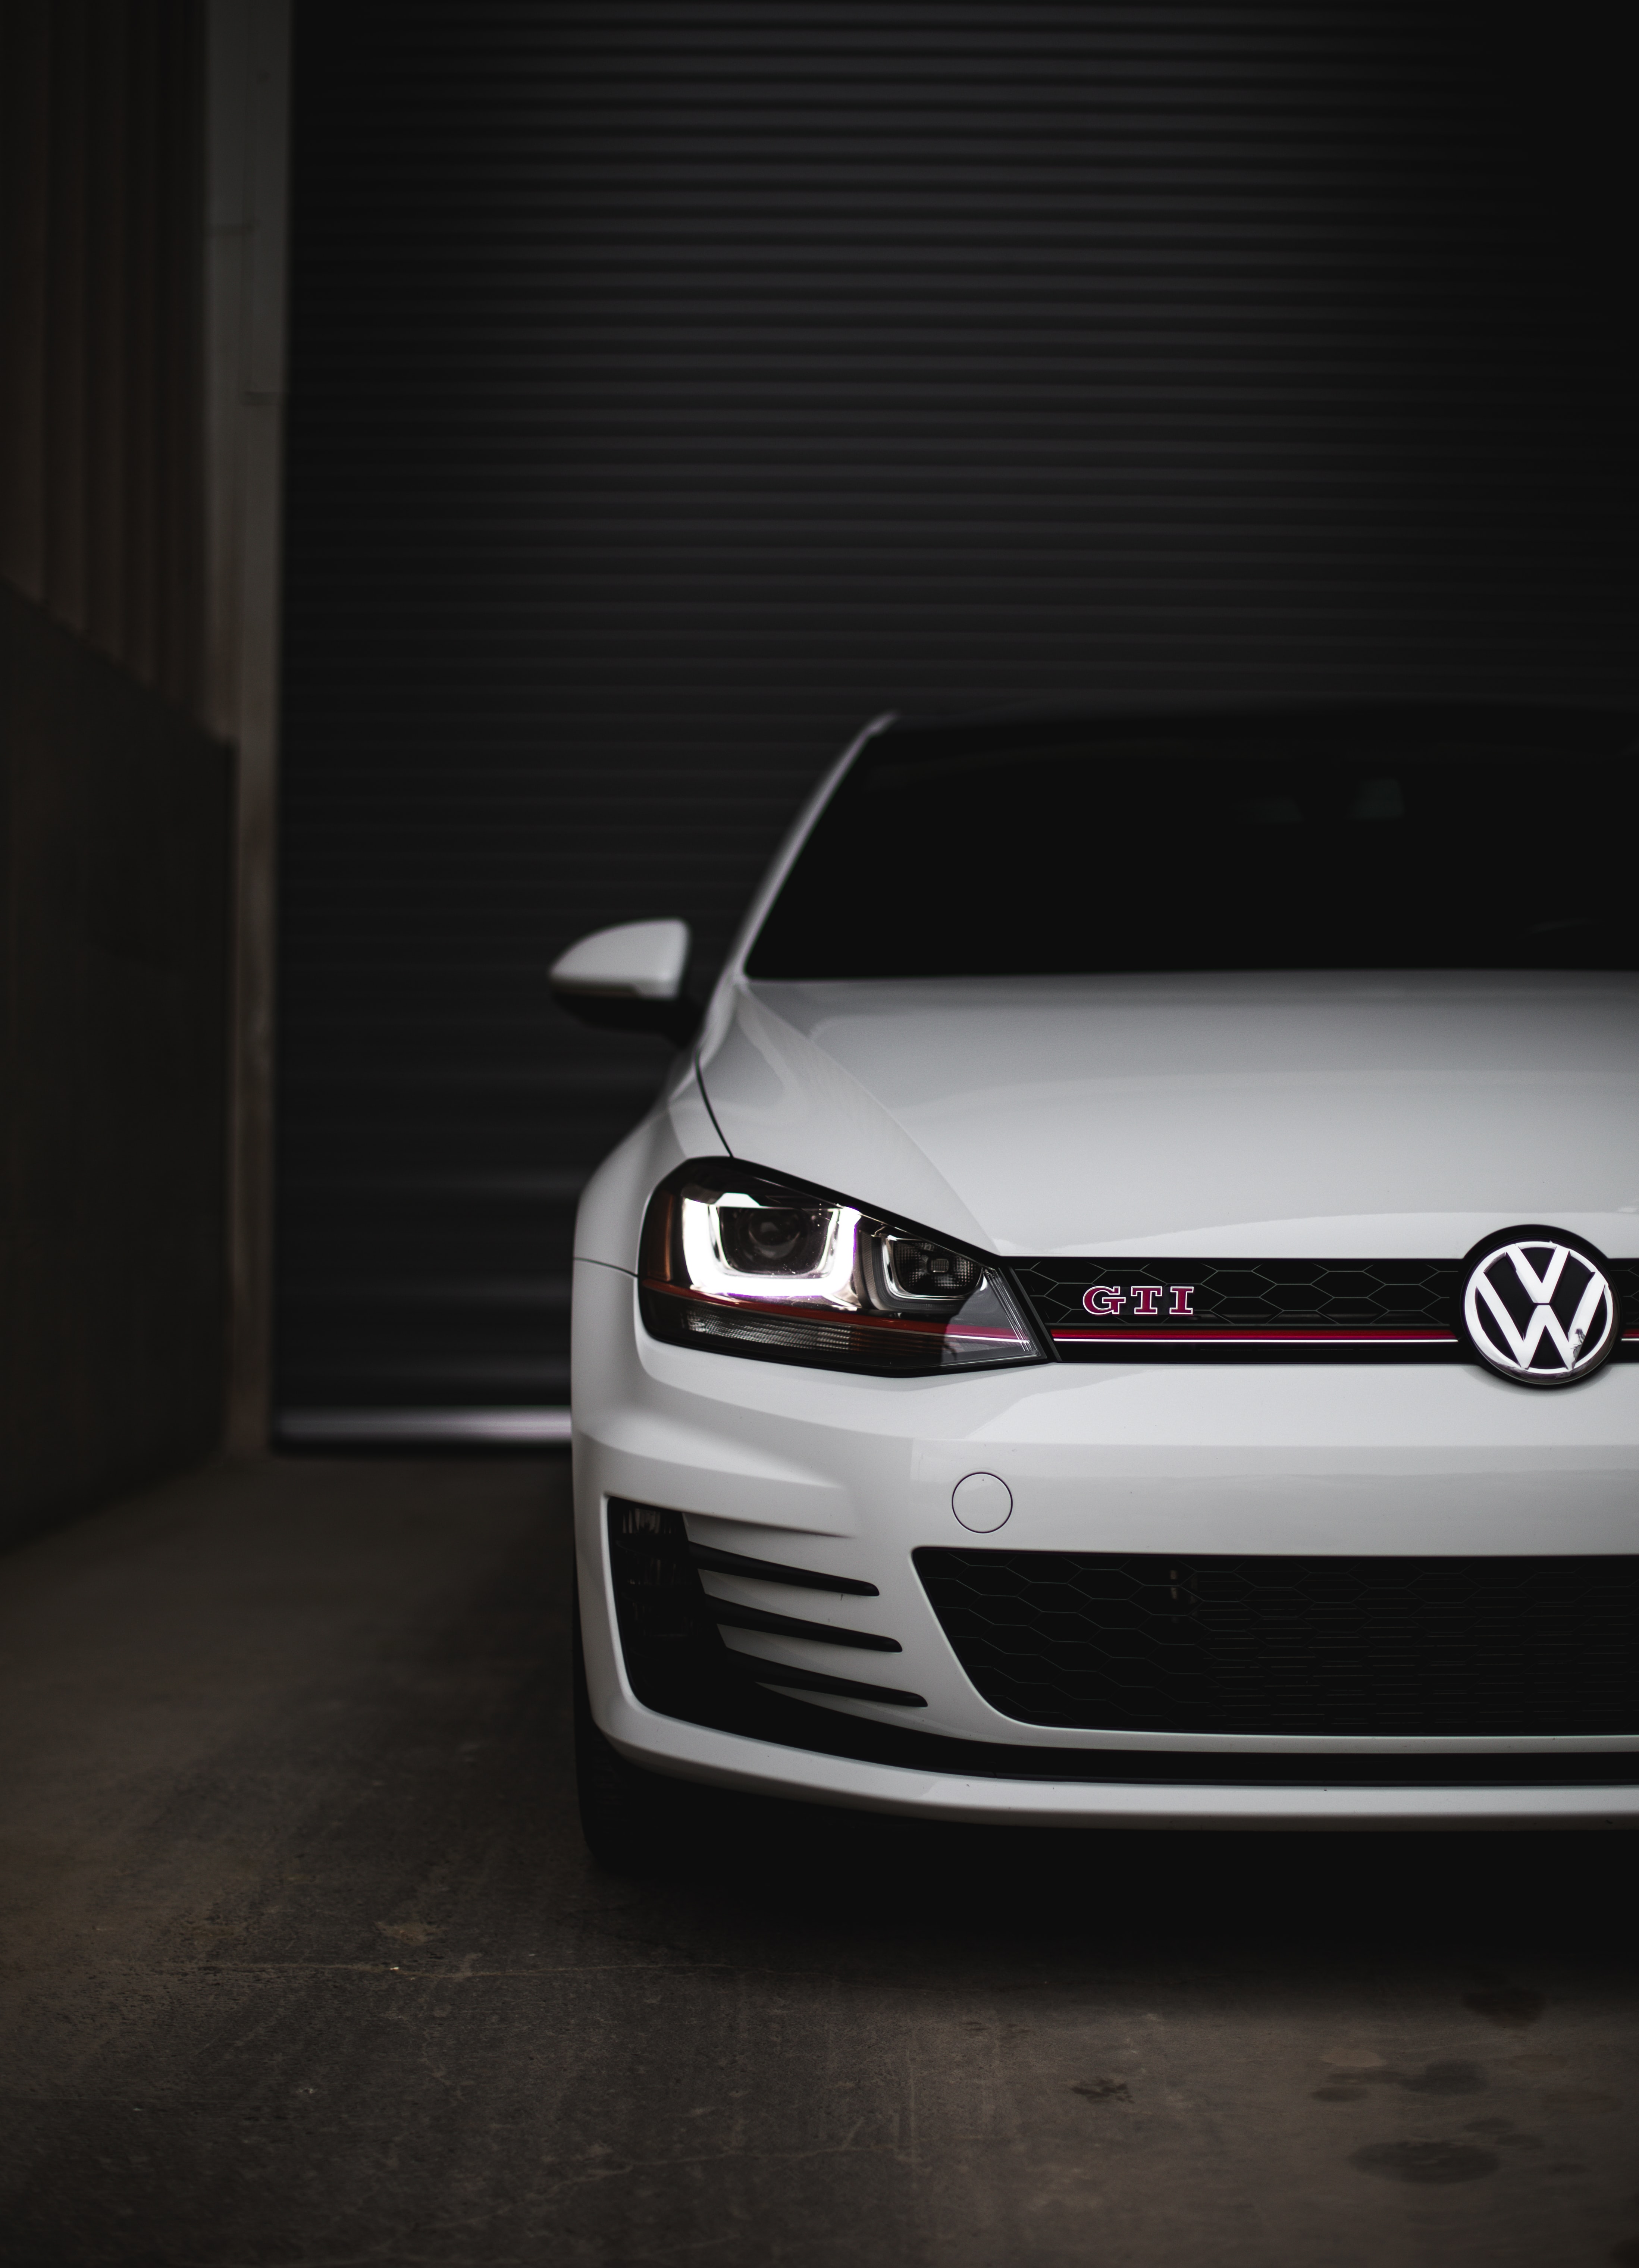 8k Volkswagen Images